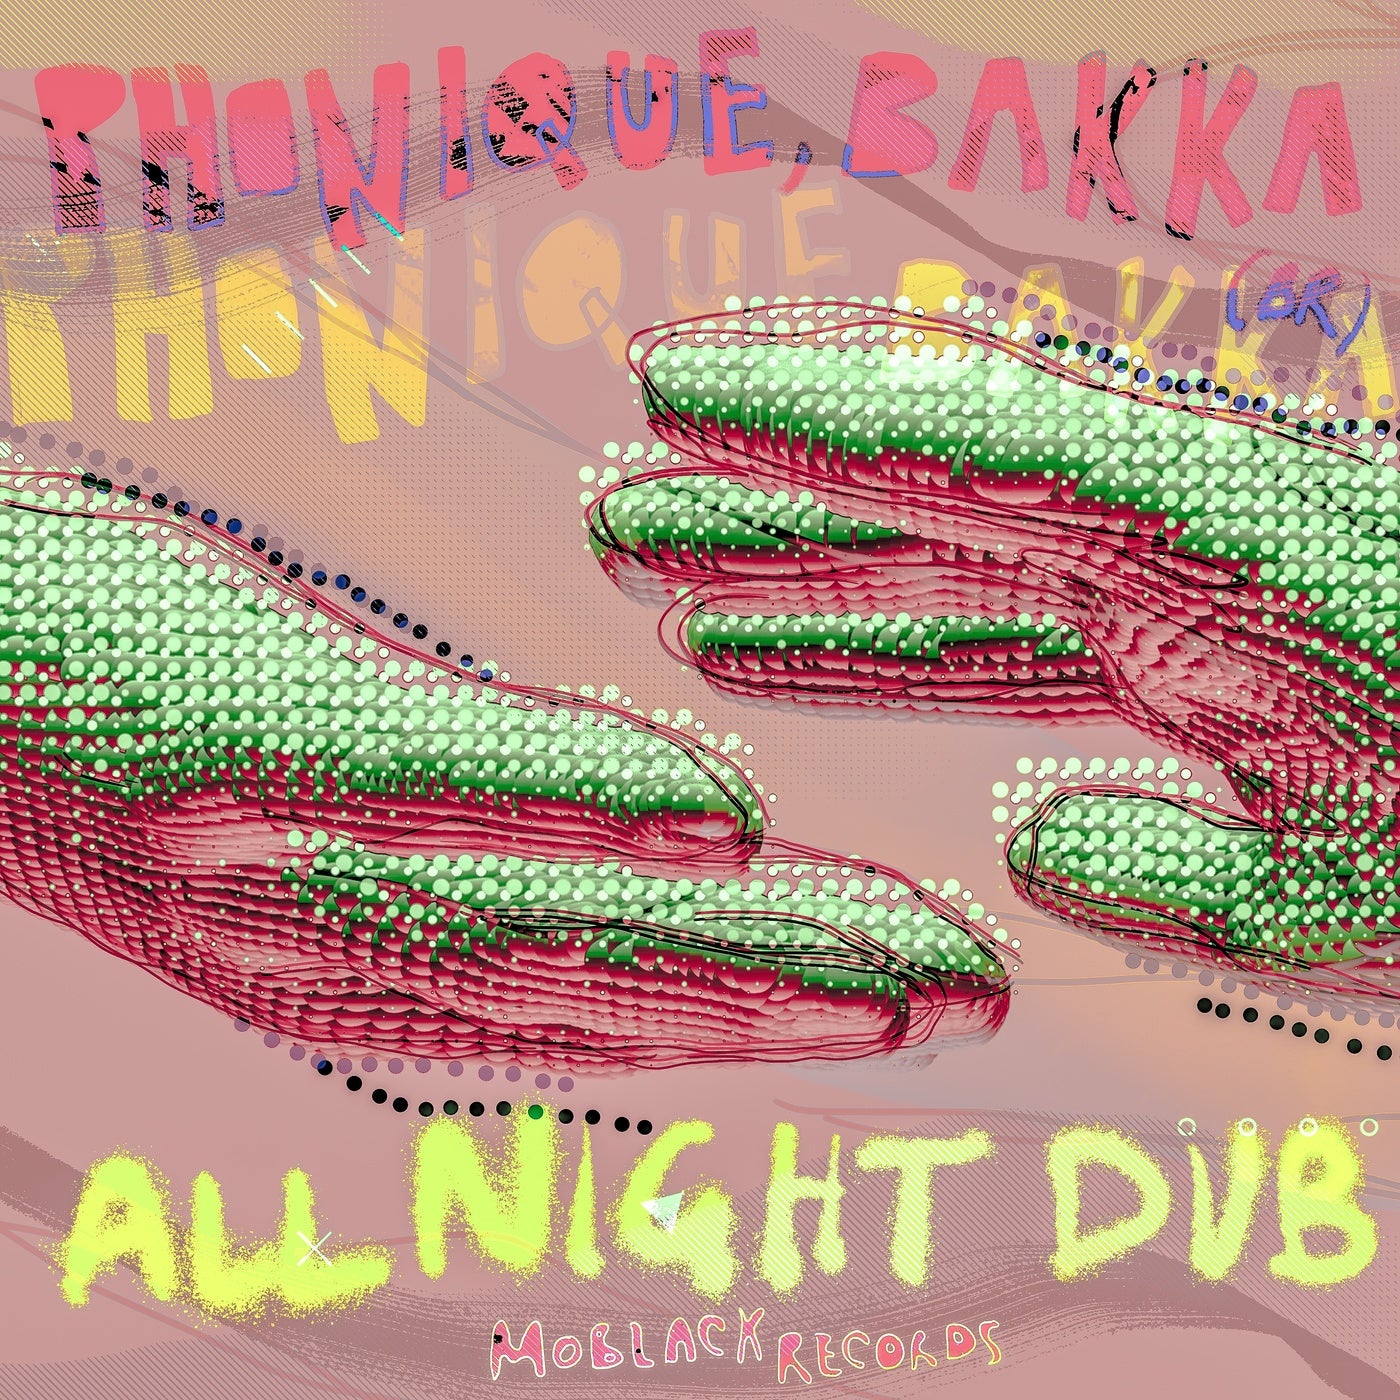 All Night Dub